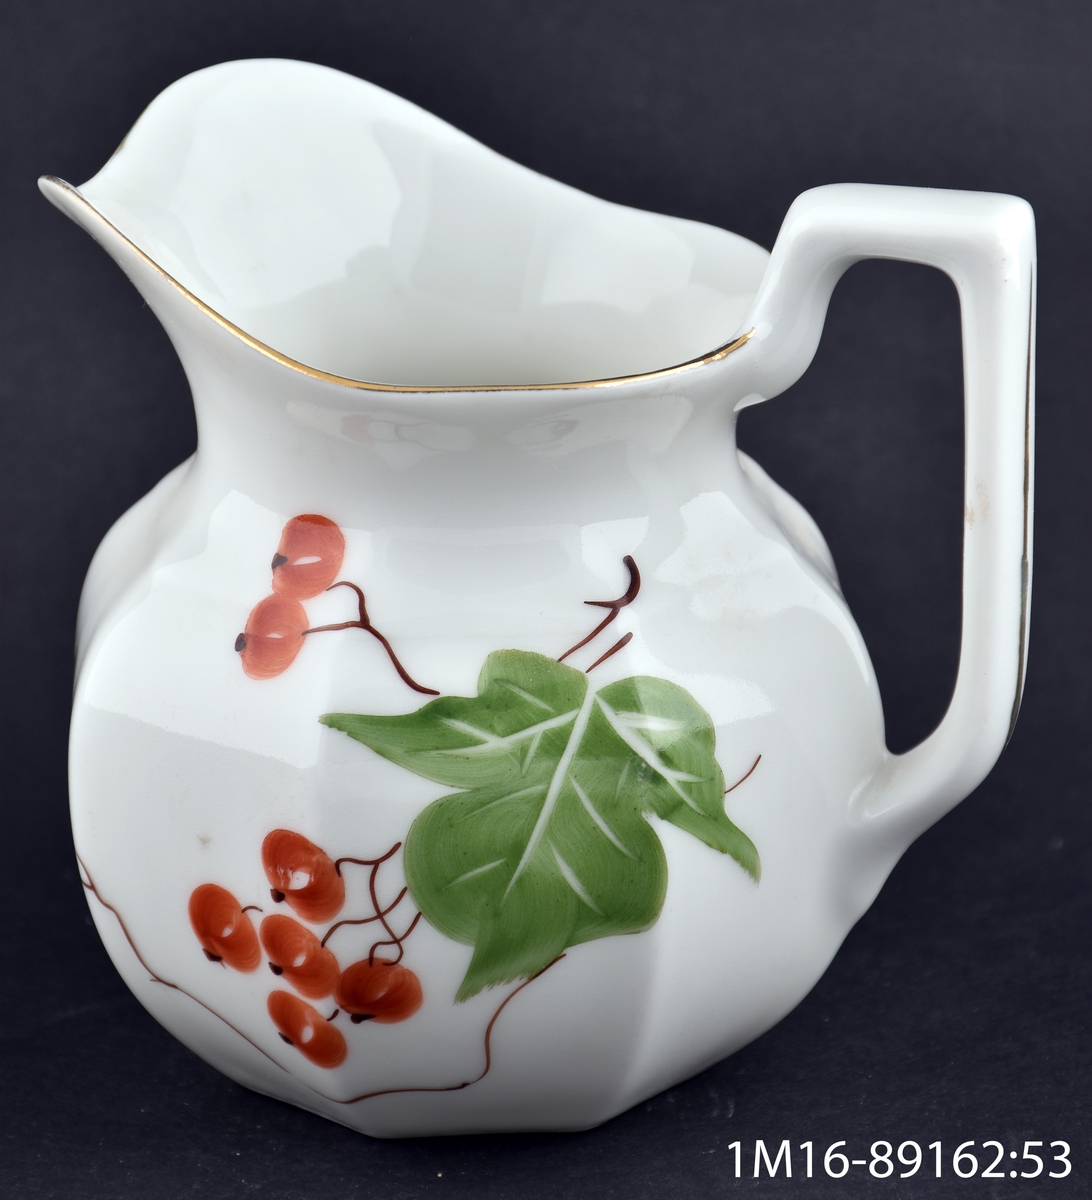 Tillbringare av porslin med handmålad dekor föreställande röda vinbär och blad.